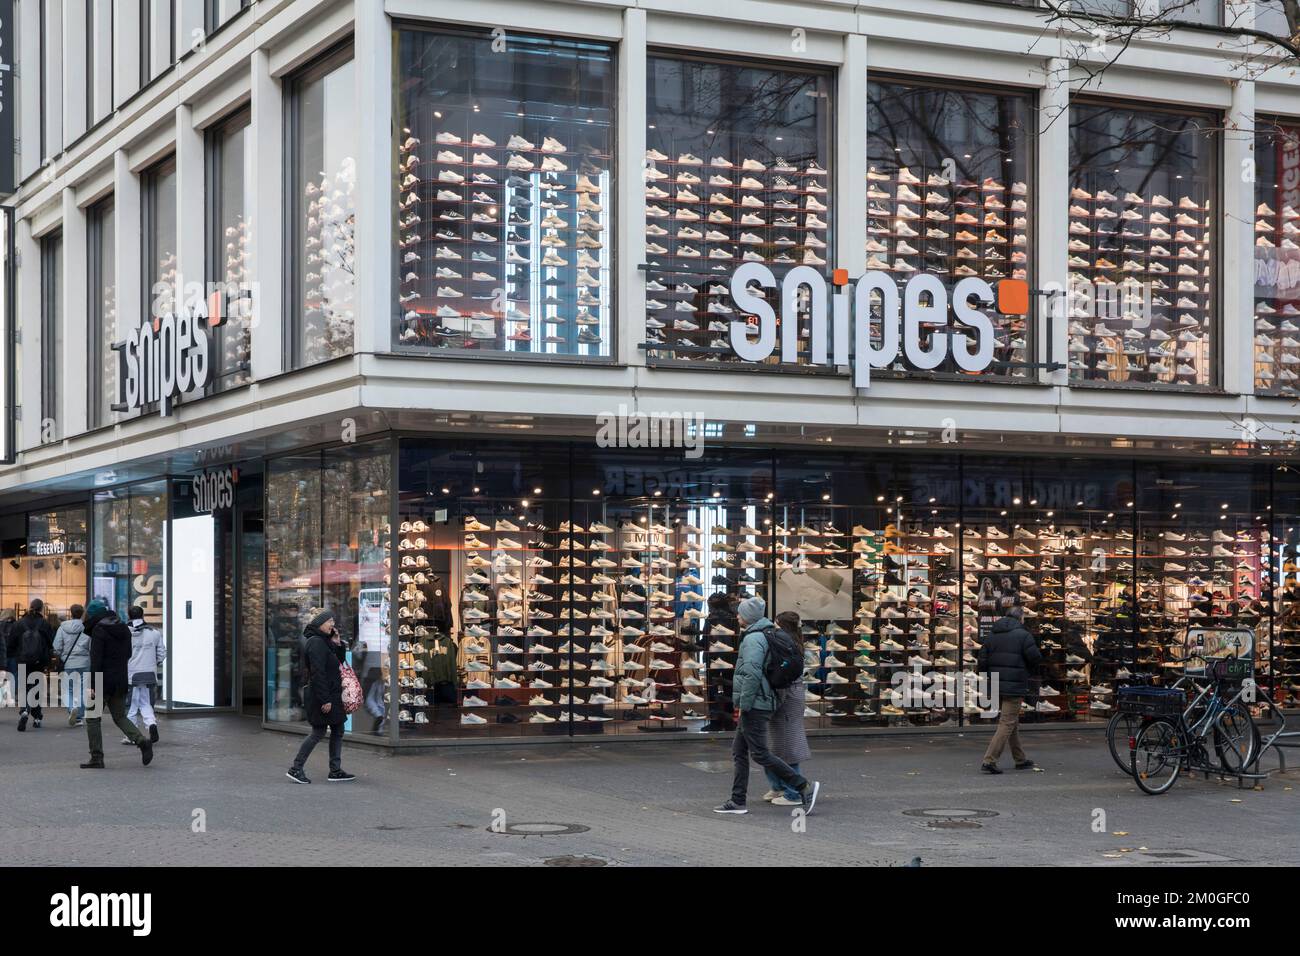 Negozio di snipes sulla strada dello shopping Hohe Strasse, negozio di  sneakers an streetwear, Colonia, Germania. Snipes Store in der  Fussgaengerzone Hohe Strasse Foto stock - Alamy